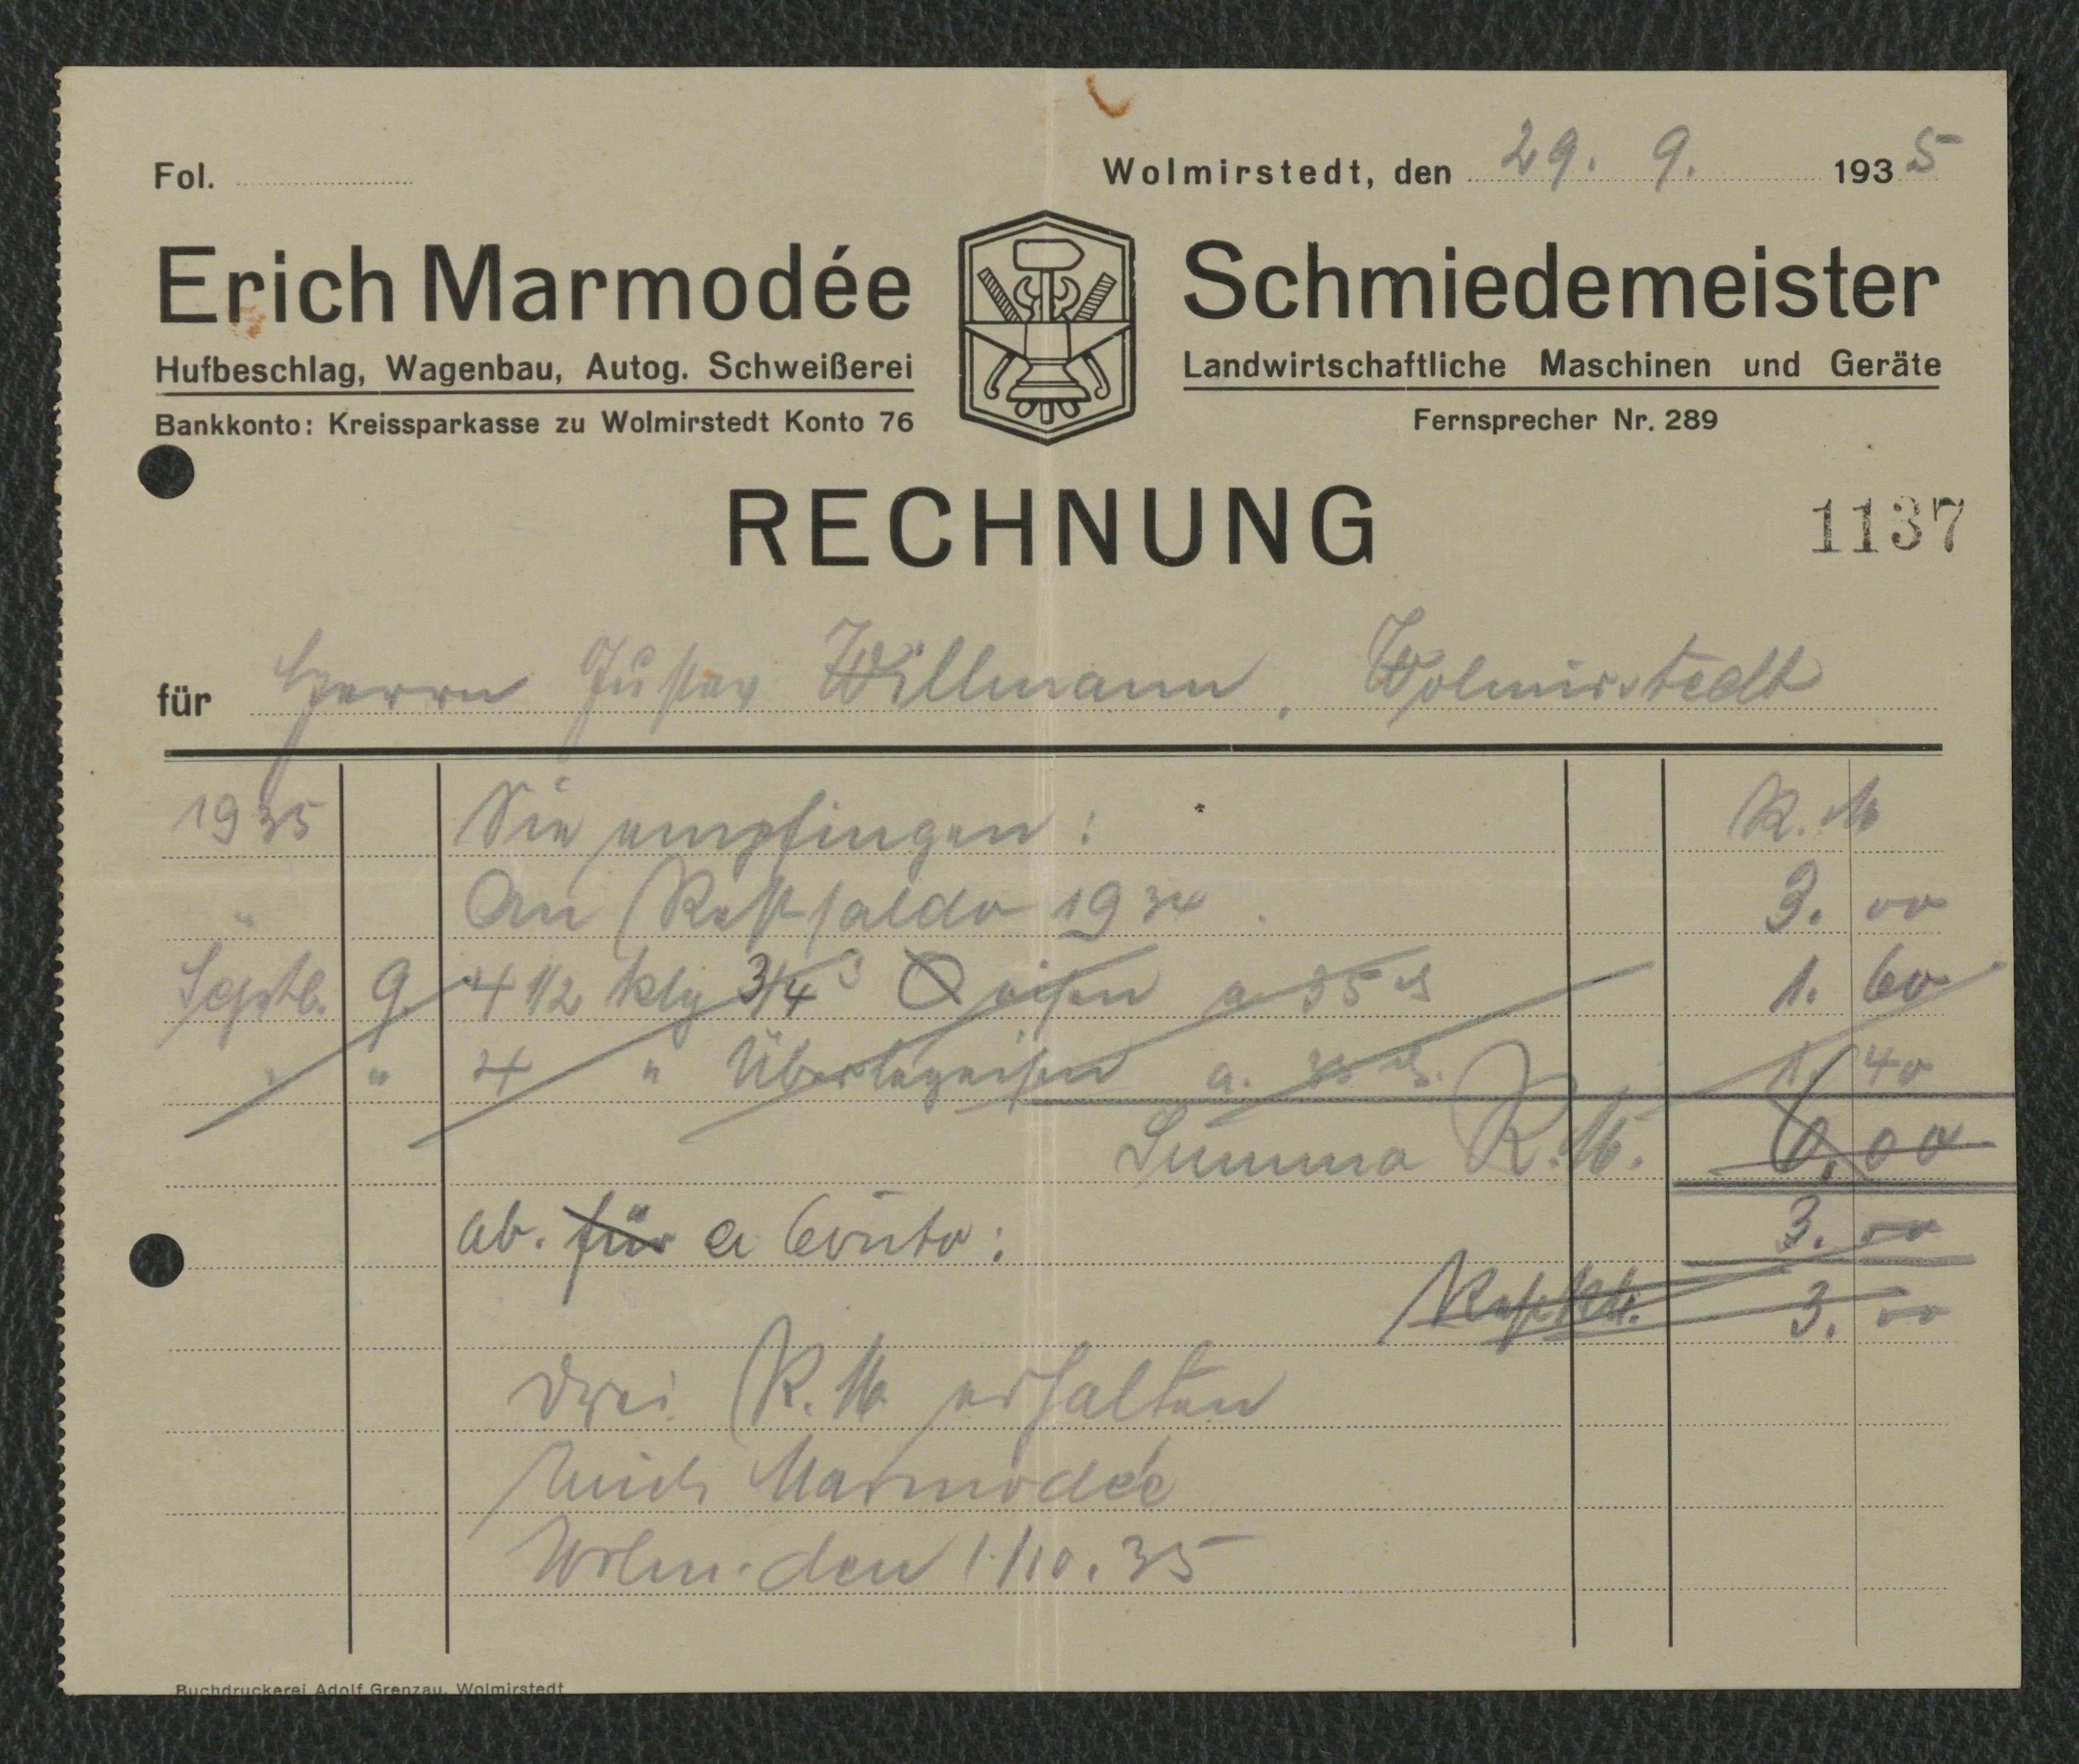 Rechnung Städtisches Elektrizitätswerk Wolmirstedt für Willmann vom 12.09.1935 (Museum Wolmirstedt RR-F)